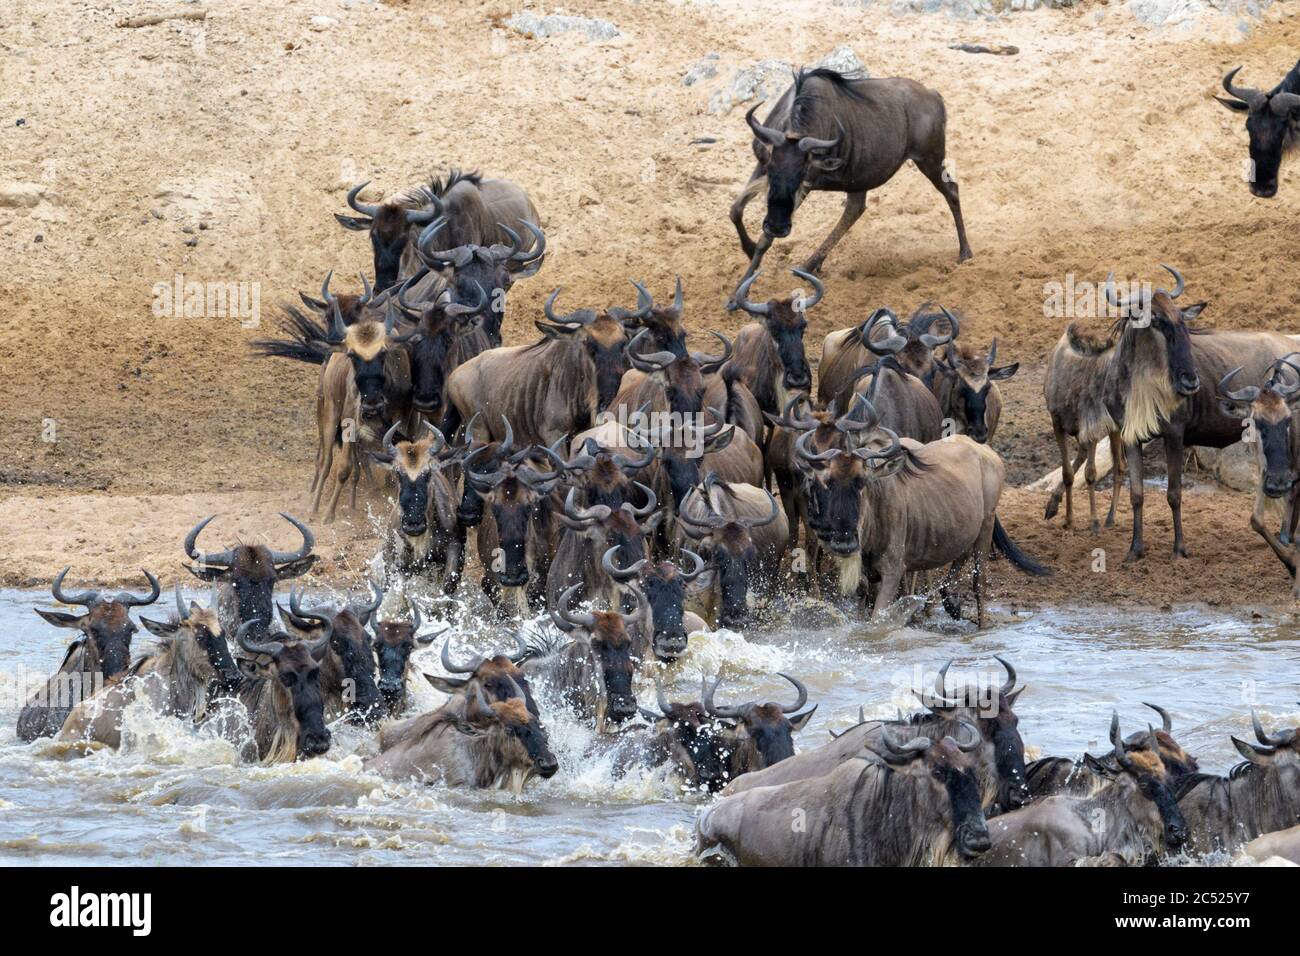 Blue wildebeest, mandria di gnu (Connochaetes taurinus), primo piano, attraversando il fiume Mara durante la grande migrazione, il parco nazionale Serengeti, Ta Foto Stock